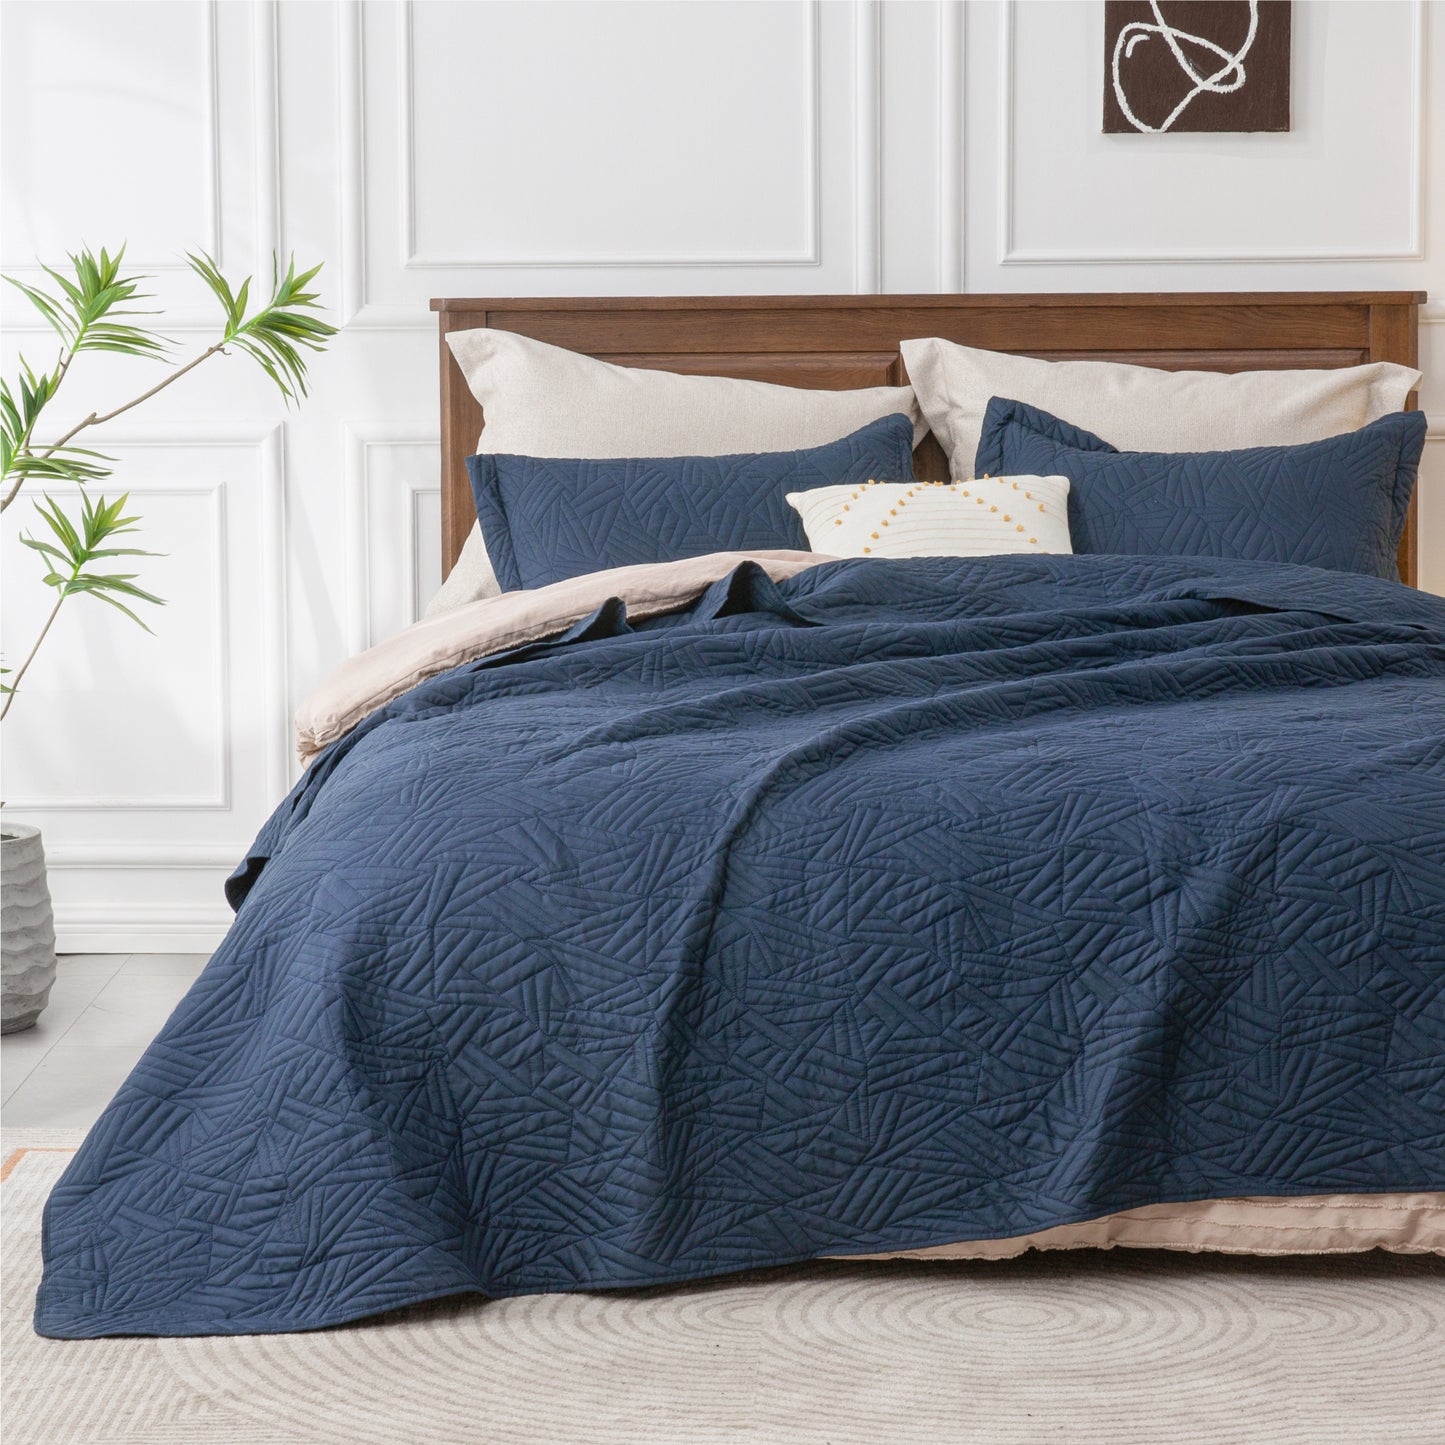 Quilts Sets - Summer Lightweight Bedspreads - Soft Modern Weave Pattern Coverlet Bed Set - 3 Piece (1 Quilt 90" x 96" + 2 Pillow Shams 20" x 26")